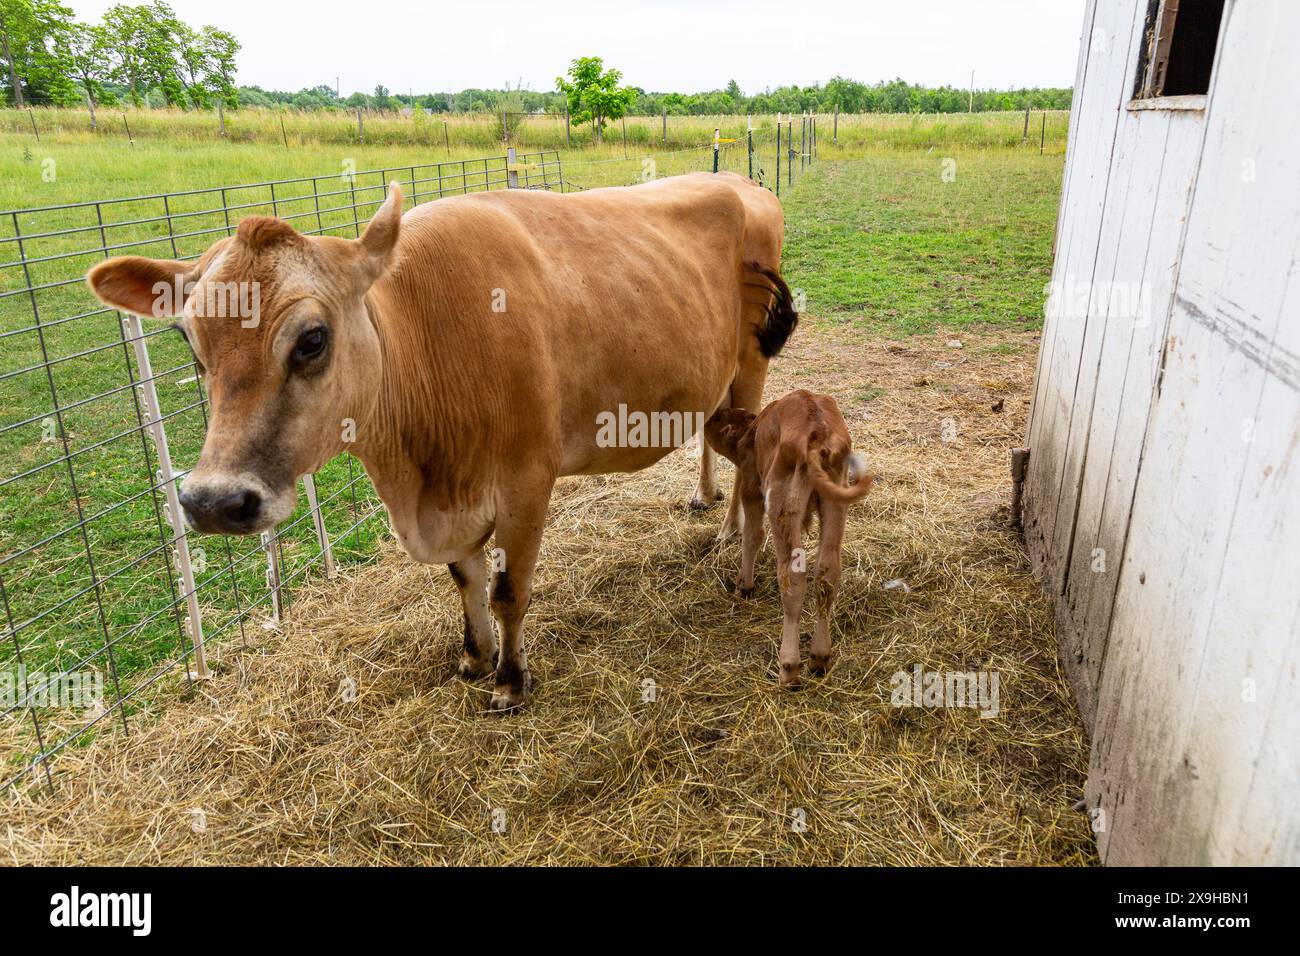 Un veau taureau nourrit de sa mère, une vache Jersey brune, dans une ferme du comté de DeKalb près de Spencerville, Indiana, États-Unis. Banque D'Images